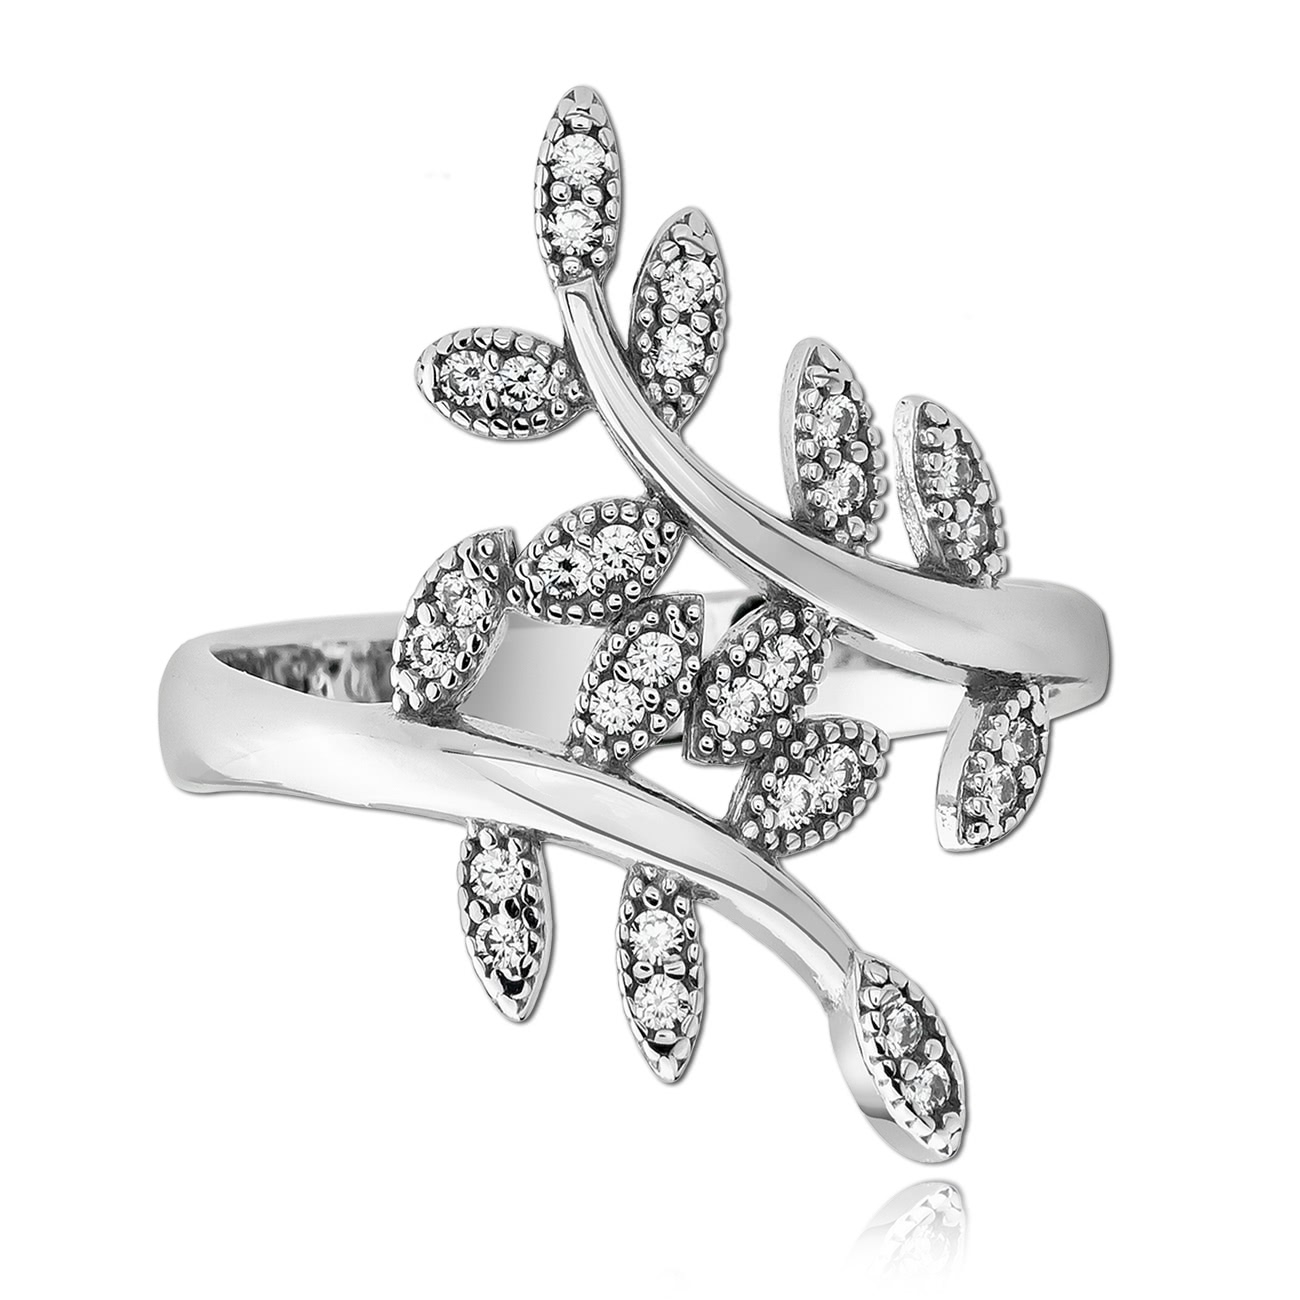 Balia Damen Ring aus 925 Silber mit Zirkonia Gr.56 BAR019W56